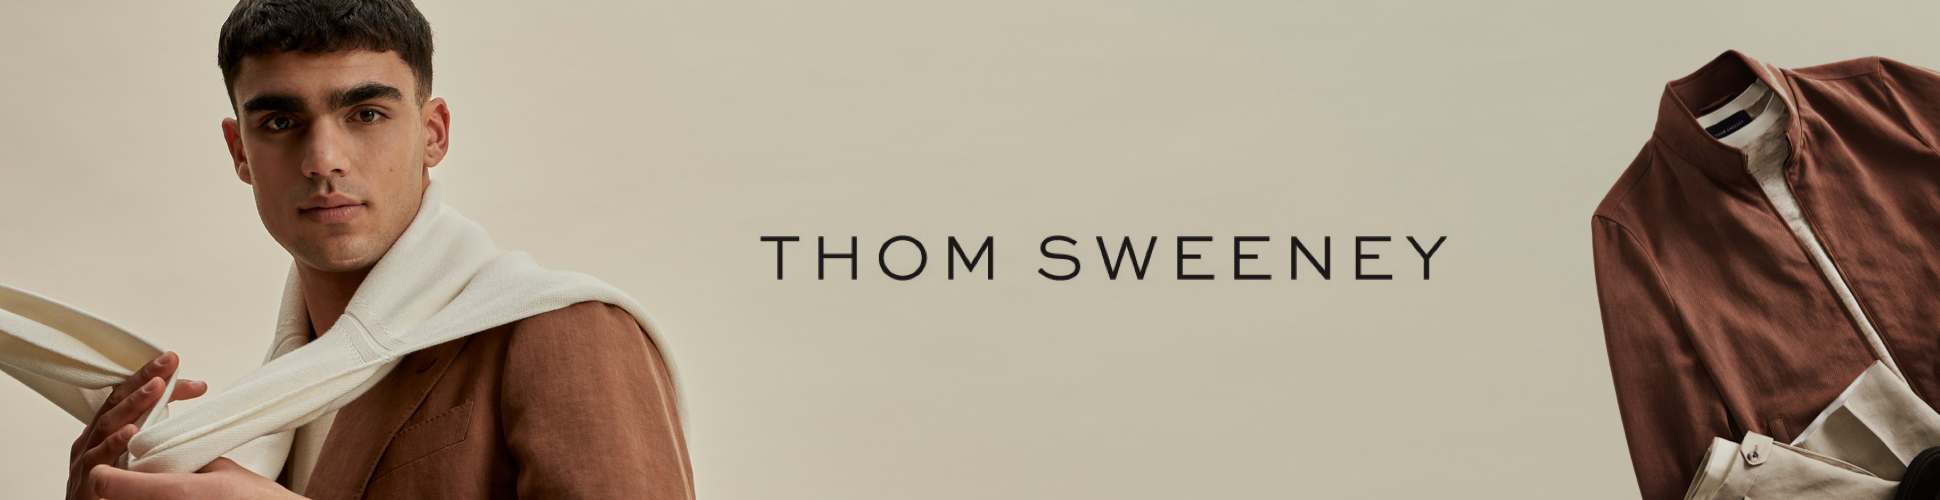 Thom Sweeney Home 1